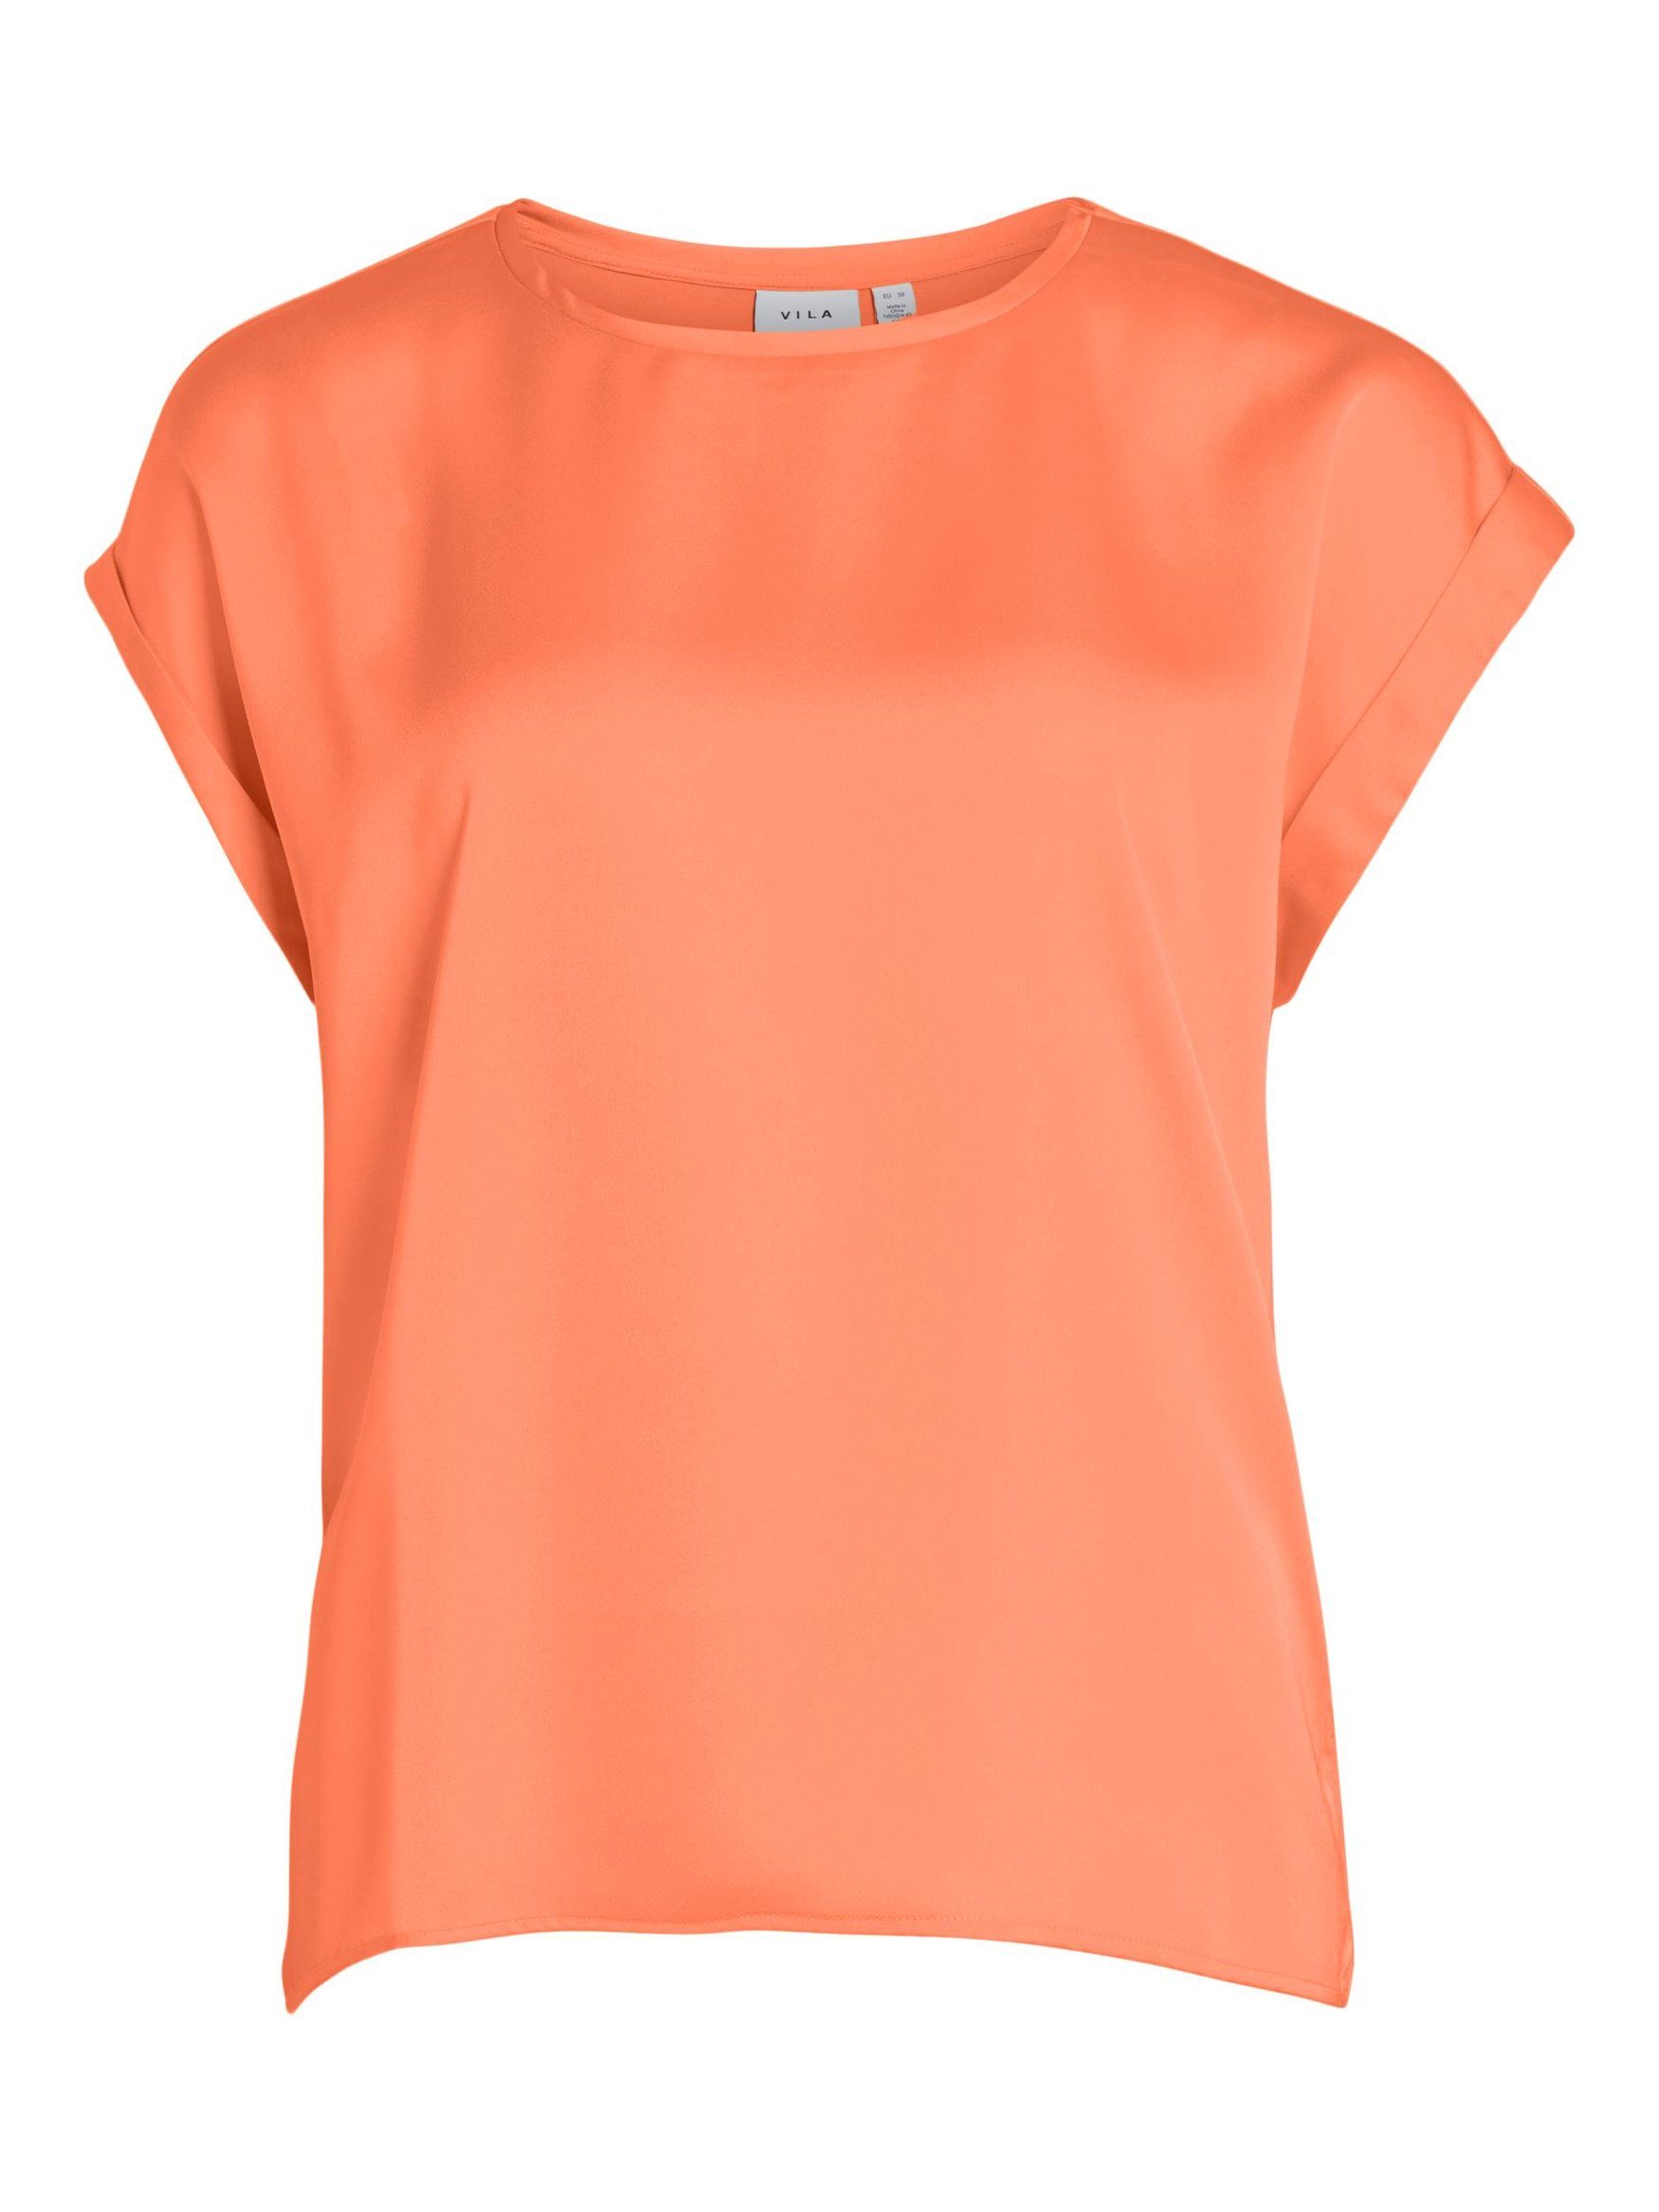 Vila T-Shirt Satain Blusen T-Shirt Kurzarm Basic Top Glänzend VIELLETTE 4599 in Neon Orange